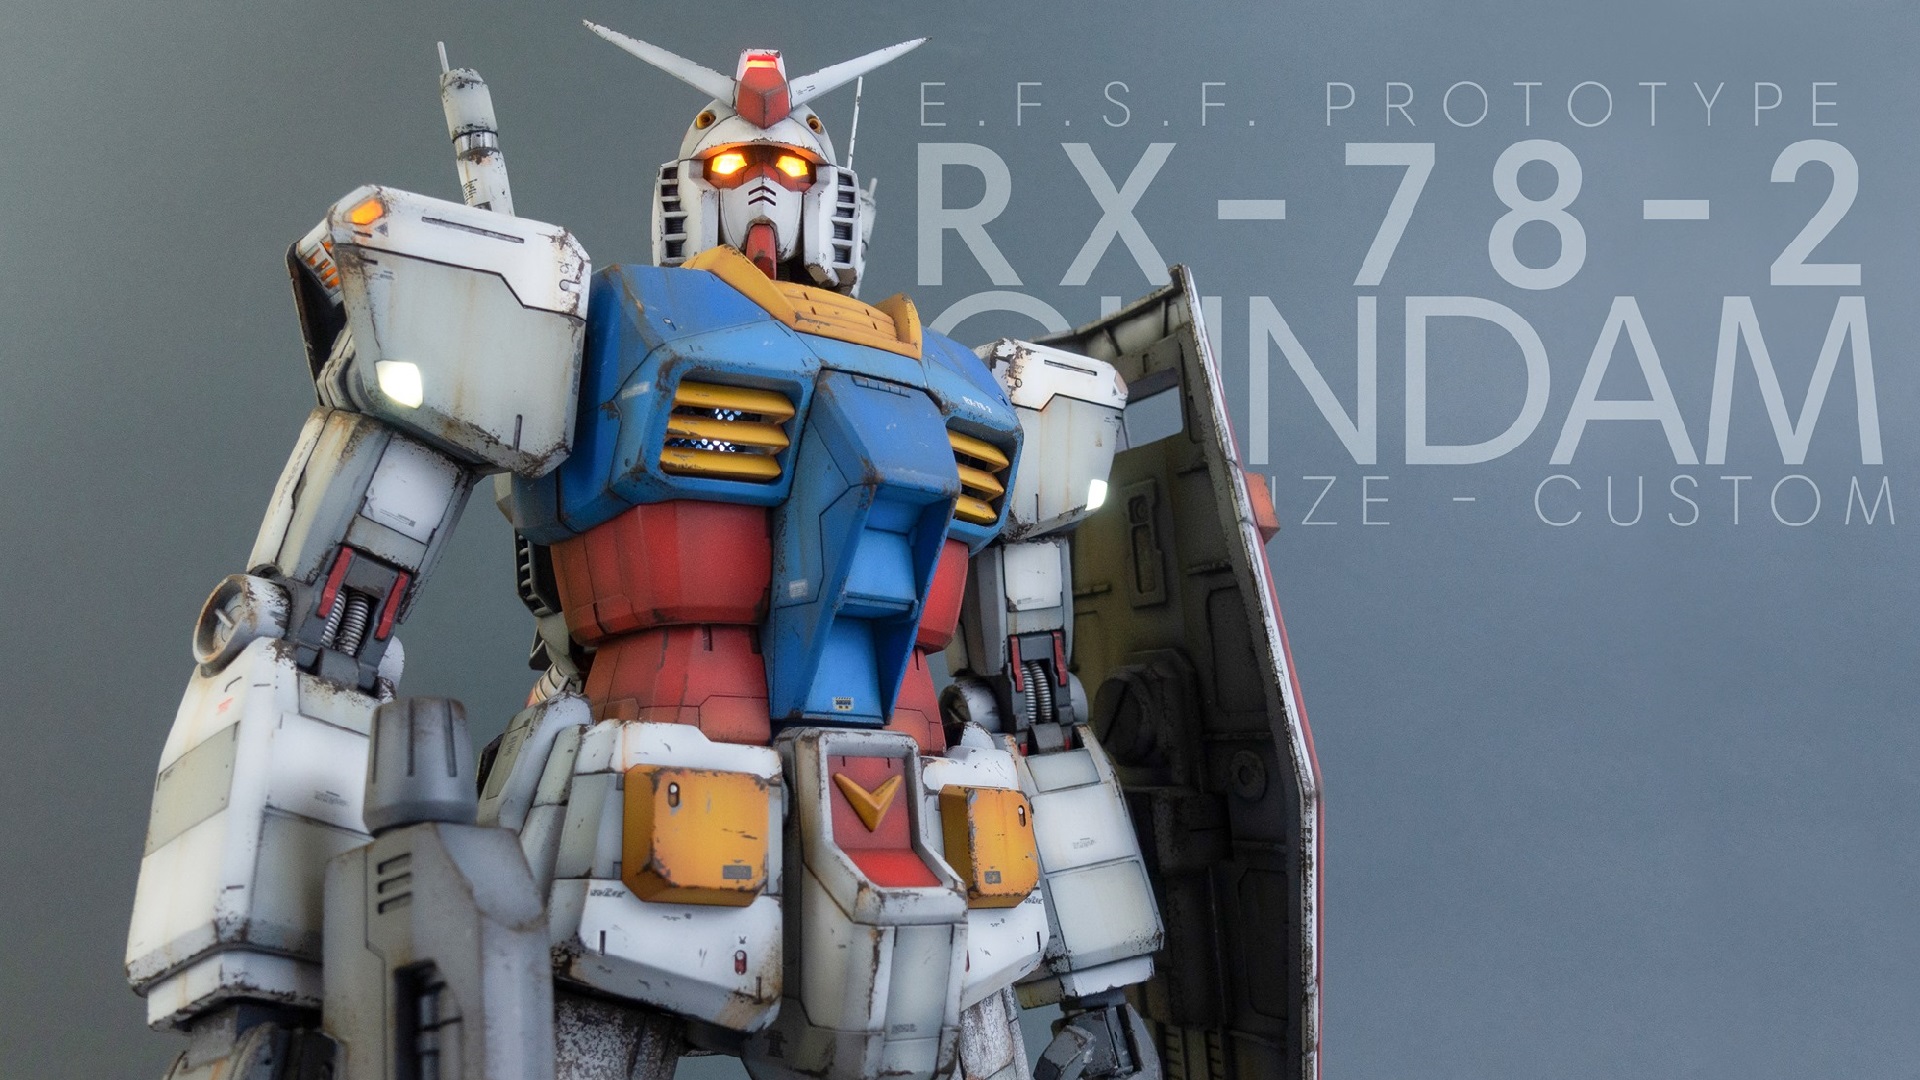 Mobile Suit Mobile Suit Gundam RX 78 Gundam Futuristic Science Fiction Anime Robot Mech Photography  1920x1080